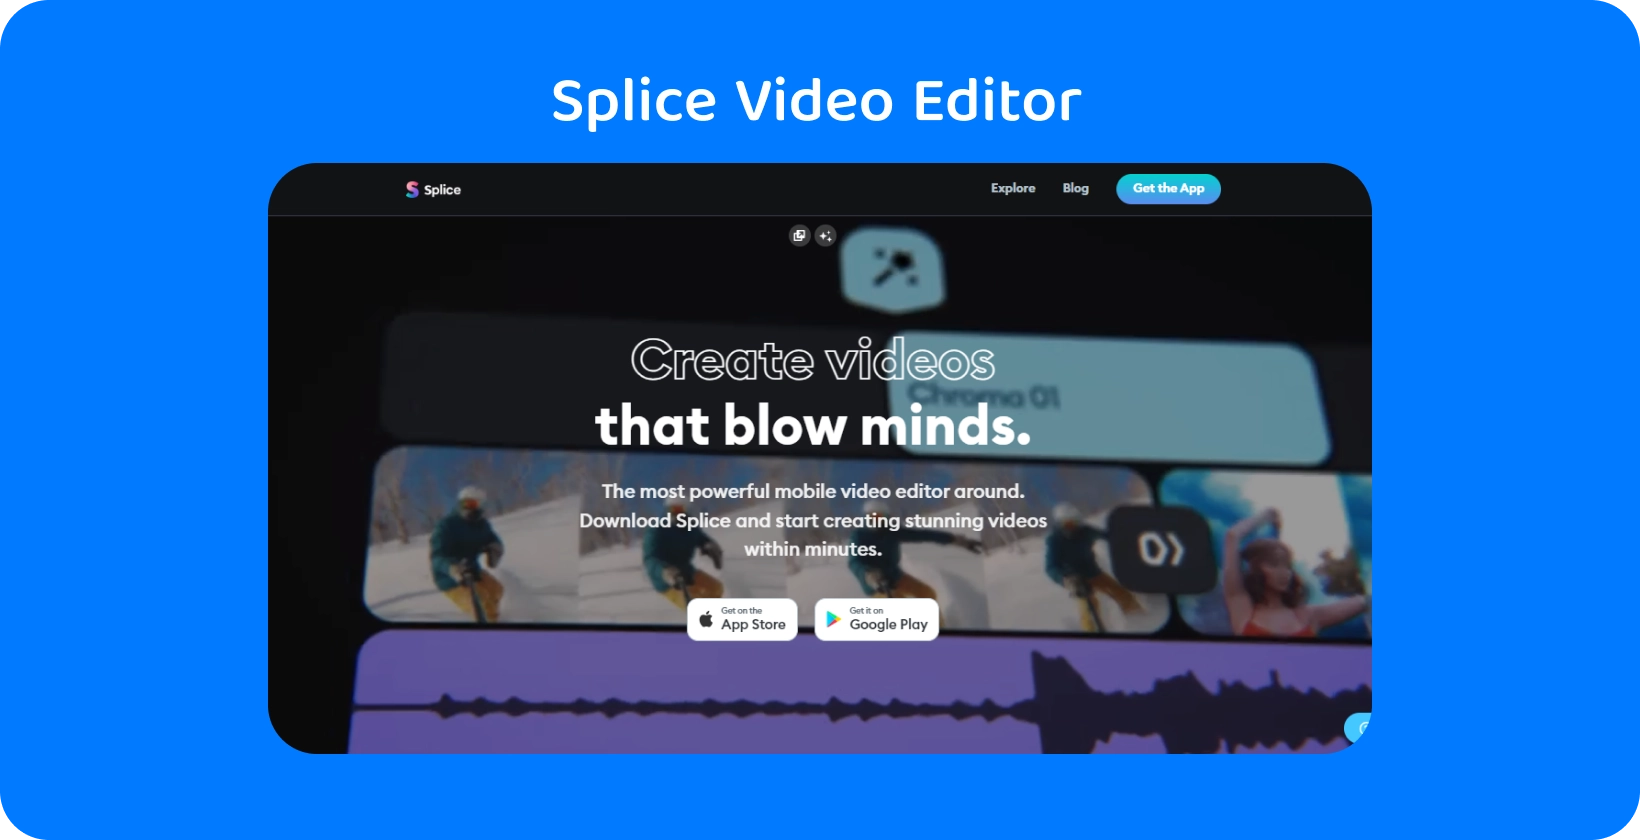 Promocja aplikacji Splice na smartfonie, reklamując ją jako najpotężniejszy mobilny edytor wideo do tworzenia oszałamiających filmów.